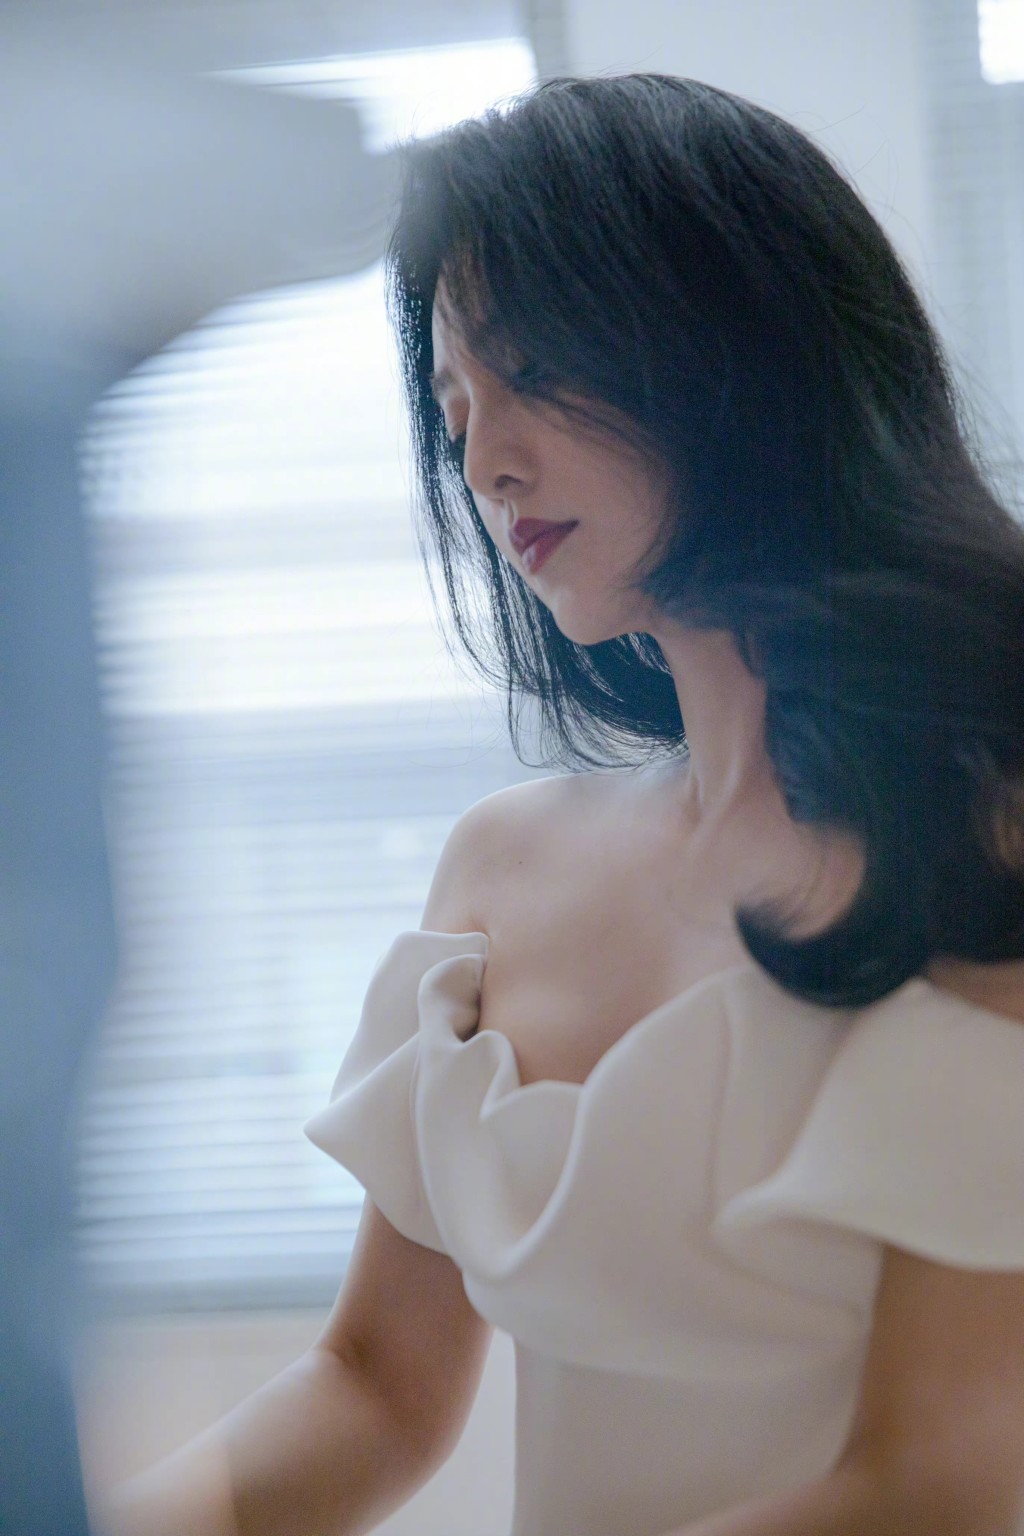 范冰冰去年在韩国釜山国际电影节获奖，她虽然未有亲身到场领奖，但预先拍下致谢词，她言谈间透露「明年见」。